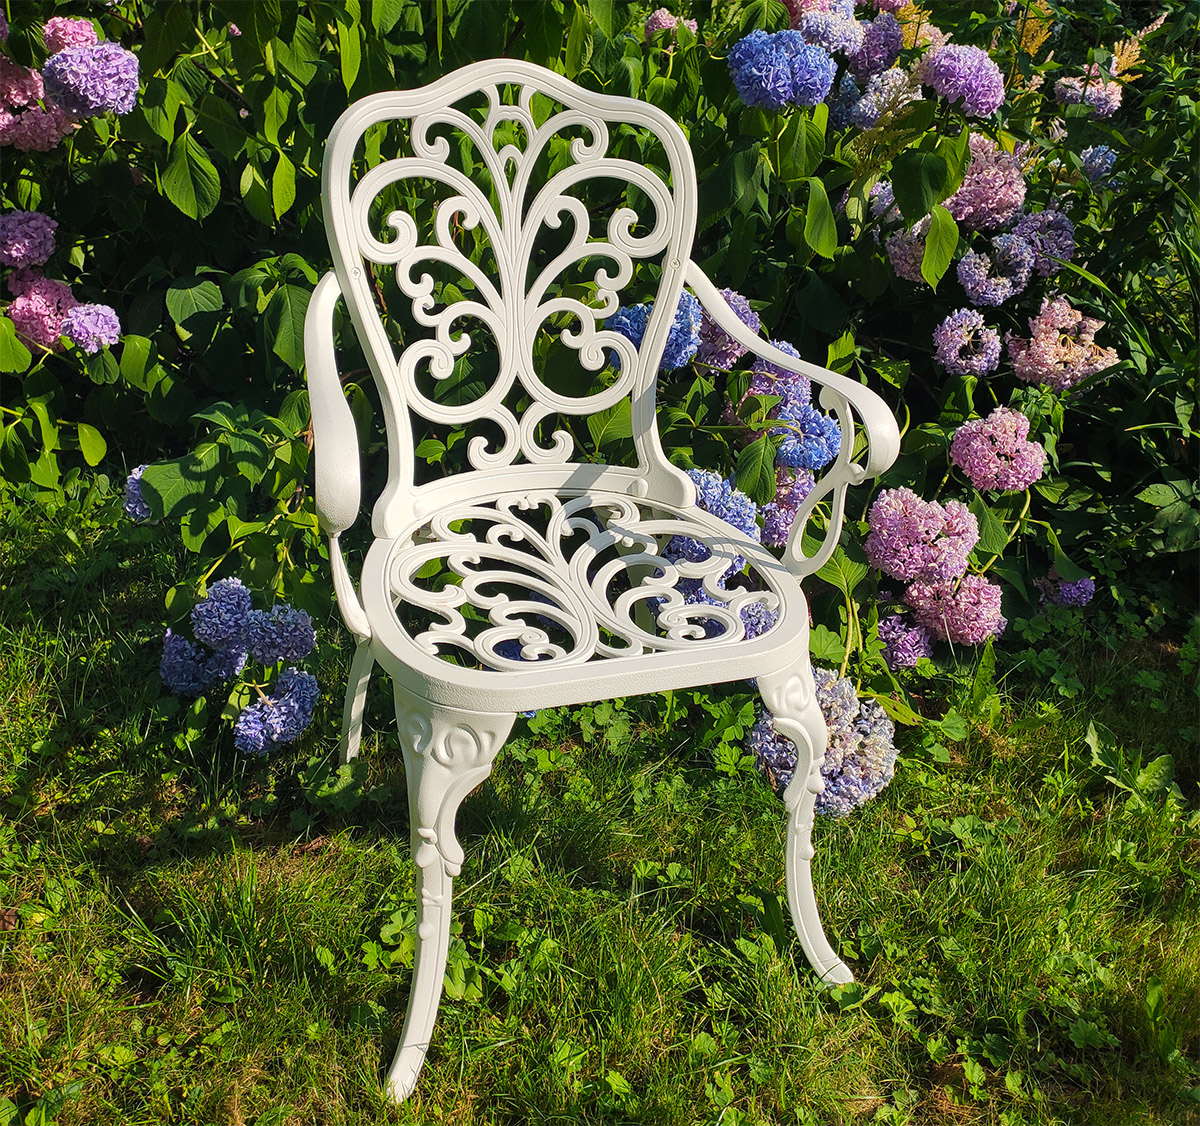 Ажурное садовое кресло Кружева из литого алюминия, мебель для сада из чугунного литья, стул для улицы в беседку, кованая мебель столы и кресла, садовая мебель белого цвета